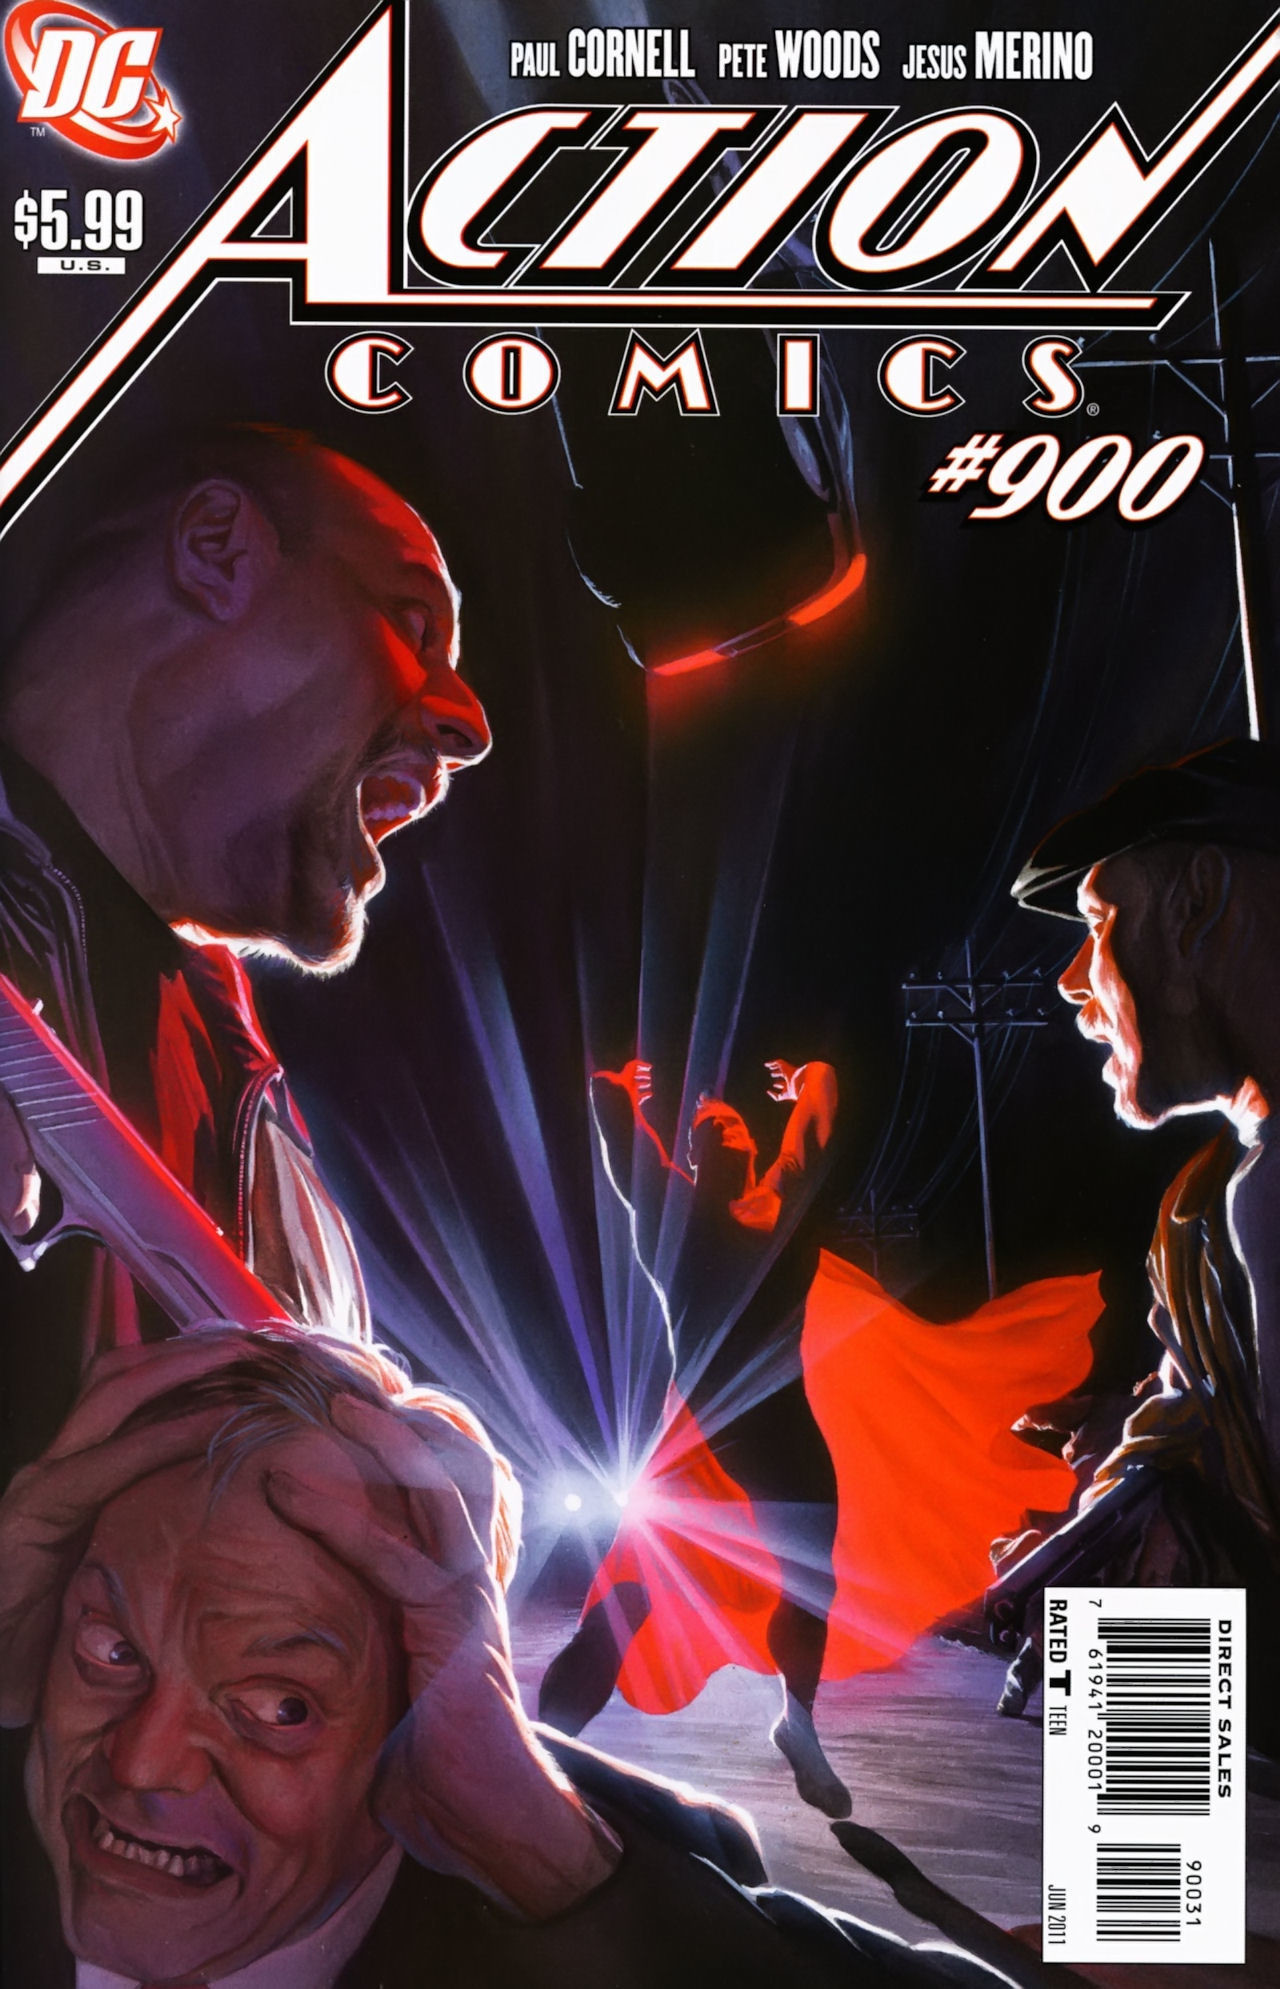 Action Comics Vol. 1 #900